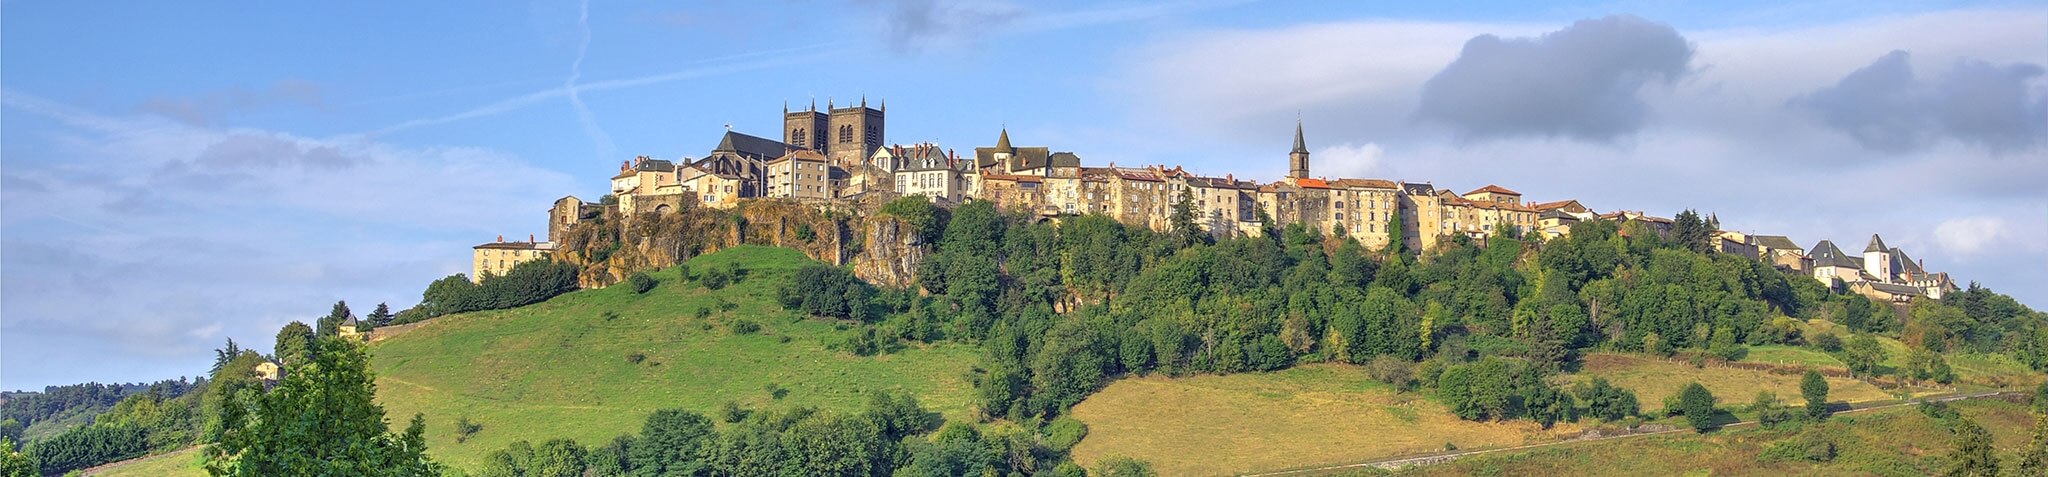 Logements neufs en Auvergne